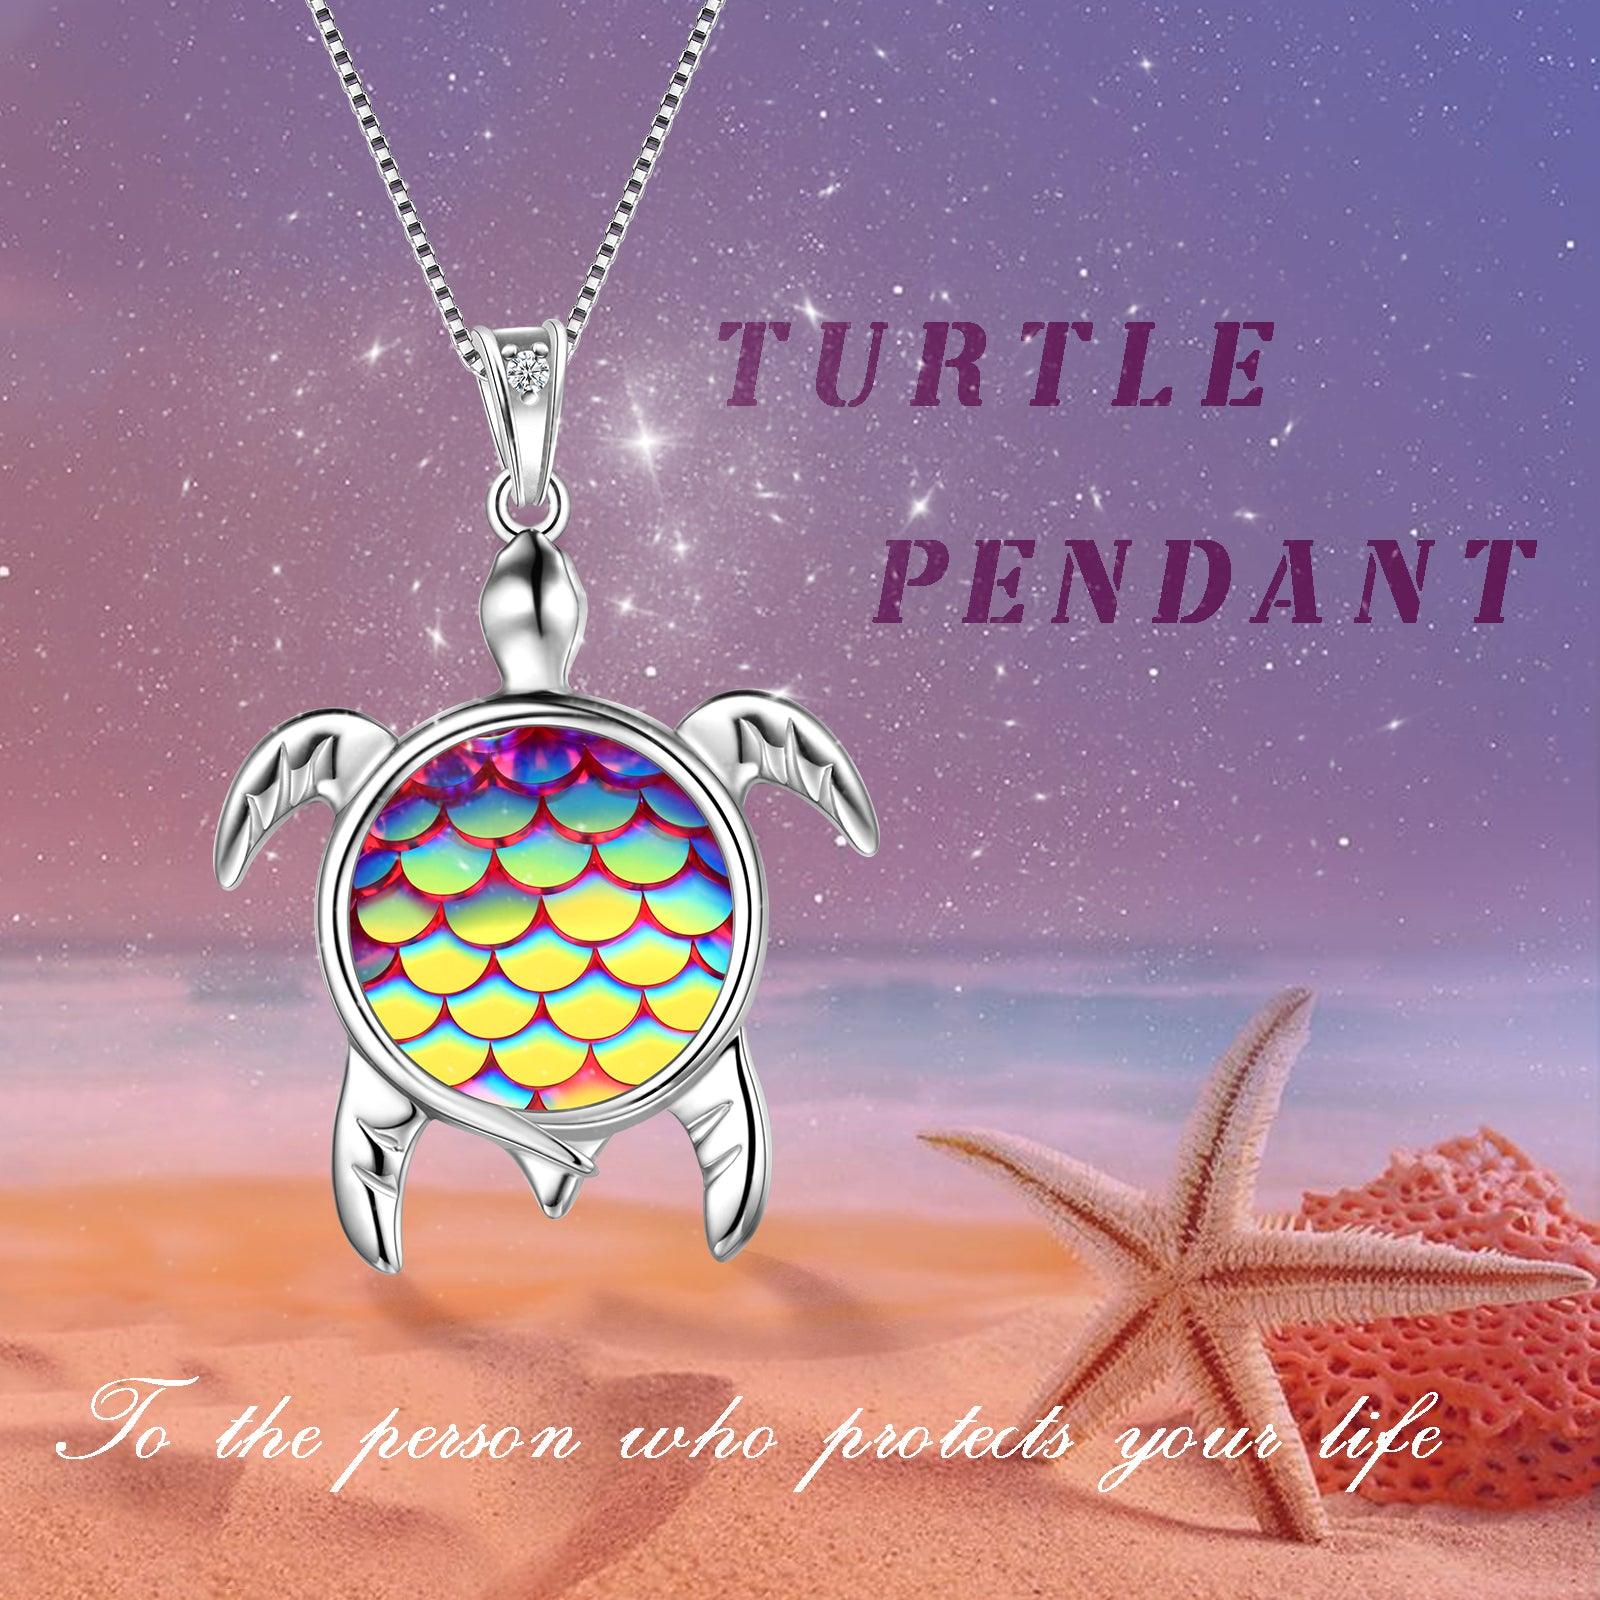 Turtle Pendant Charm Necklace Gradient Colorful Purple - Necklaces - Aurora Tears